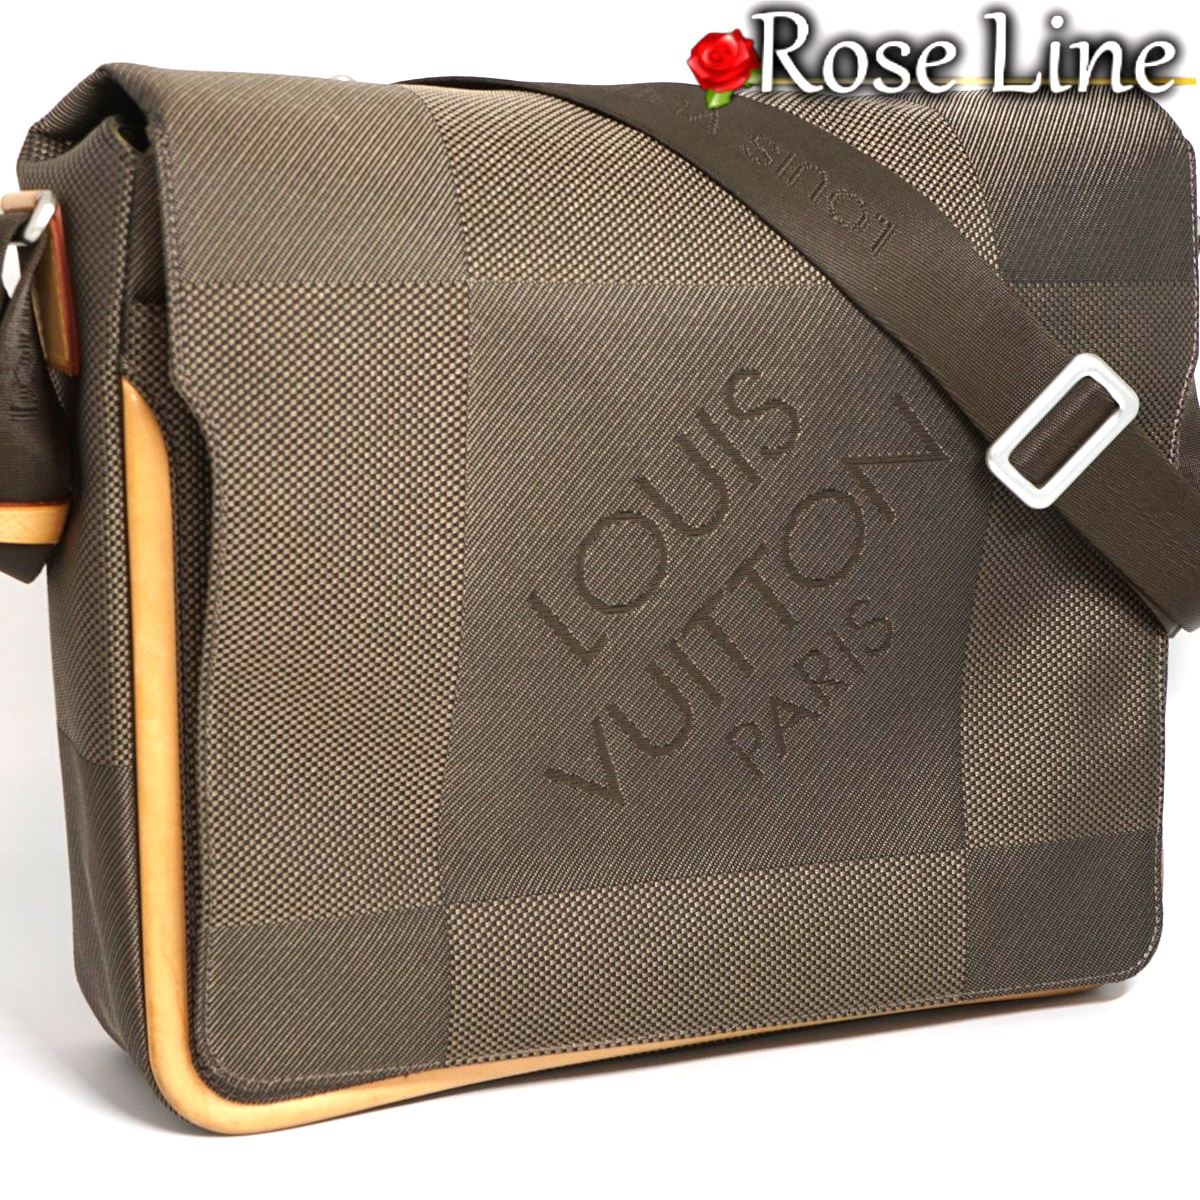 【美品】Louis Vuitton ダミエジェアン メサジェ ショルダーバッグ 鞄 テール DAMIERGEANT メンズ レディース ジュアン 廃盤品 M93030